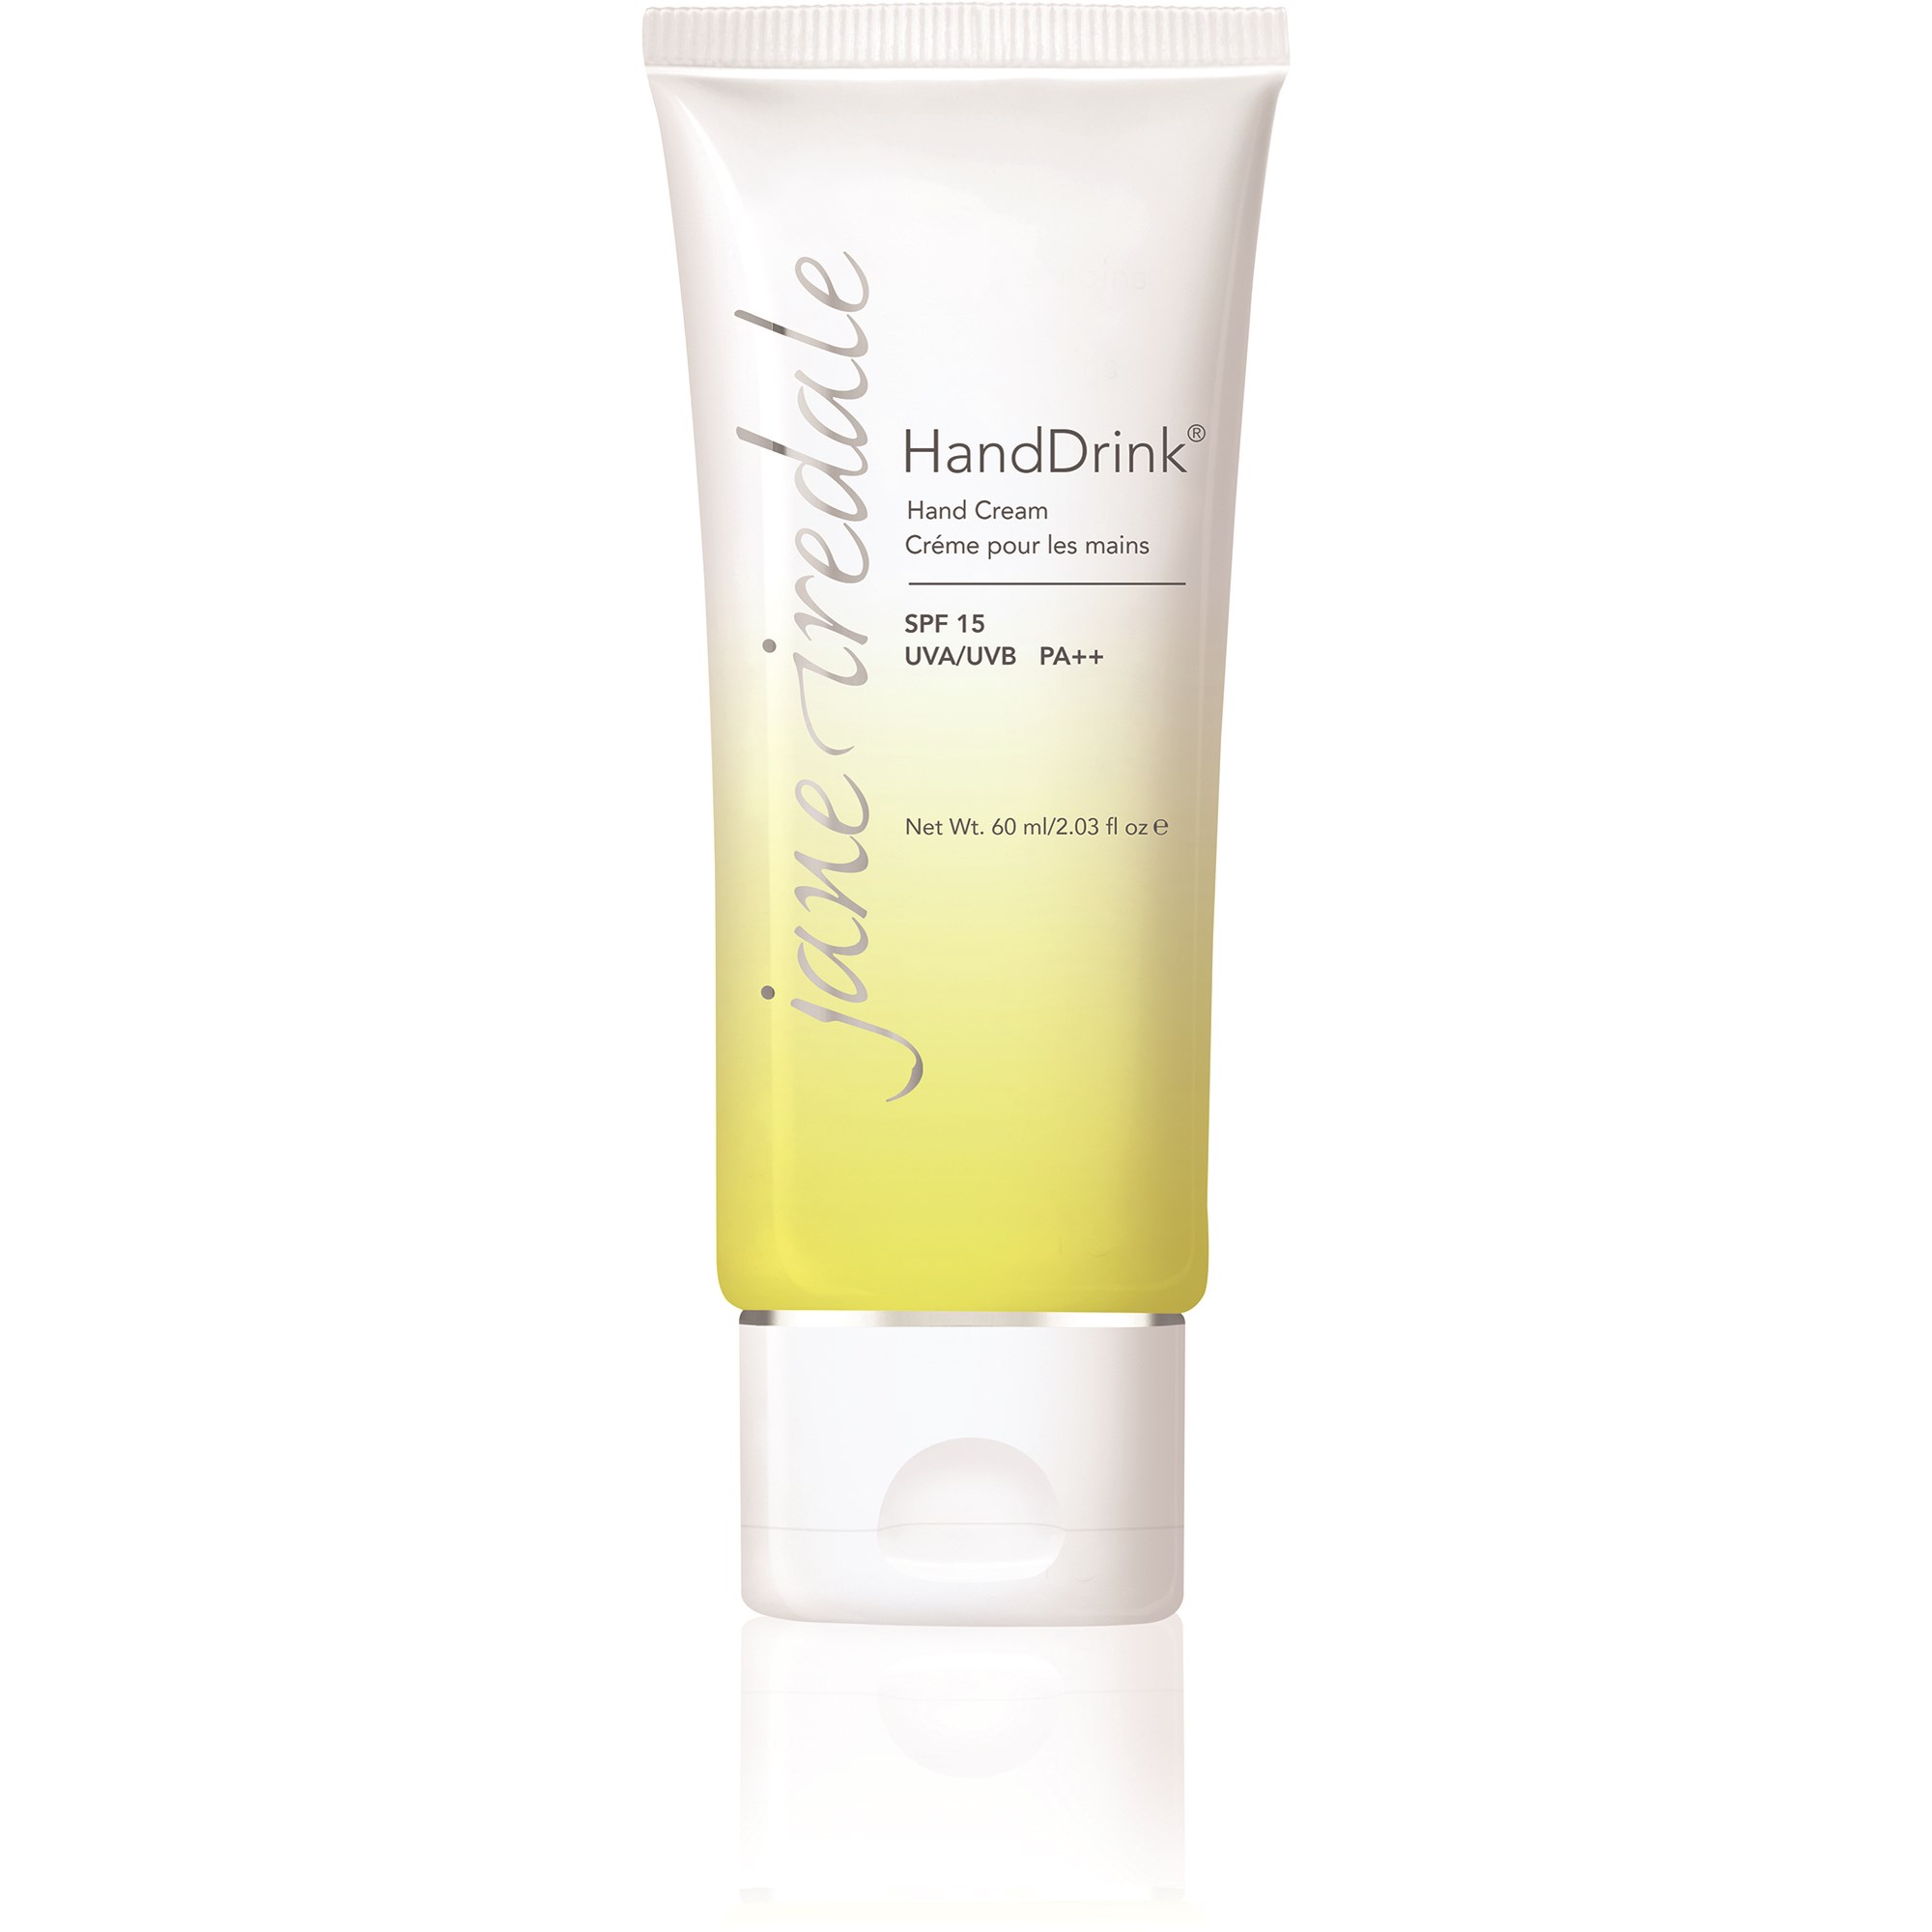 Läs mer om Jane Iredale Hand Cream Handdrink Lemongrass 60 ml